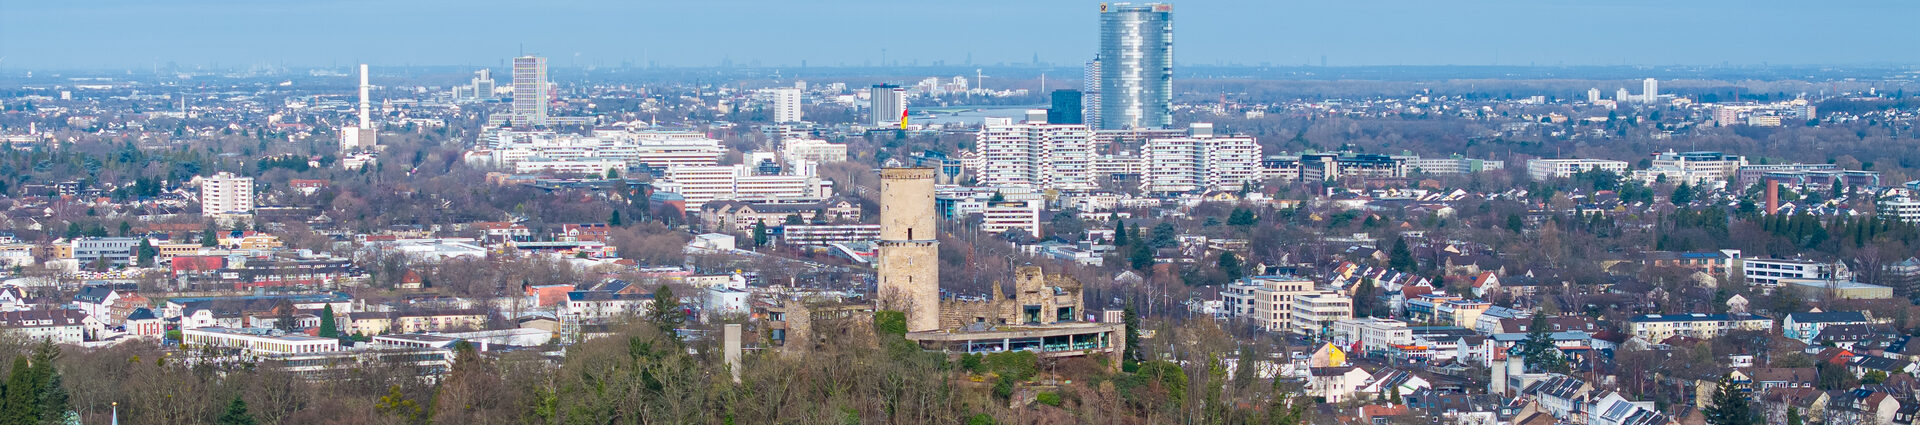 Luftaufnahme : Godesburg und Regierungsviertel